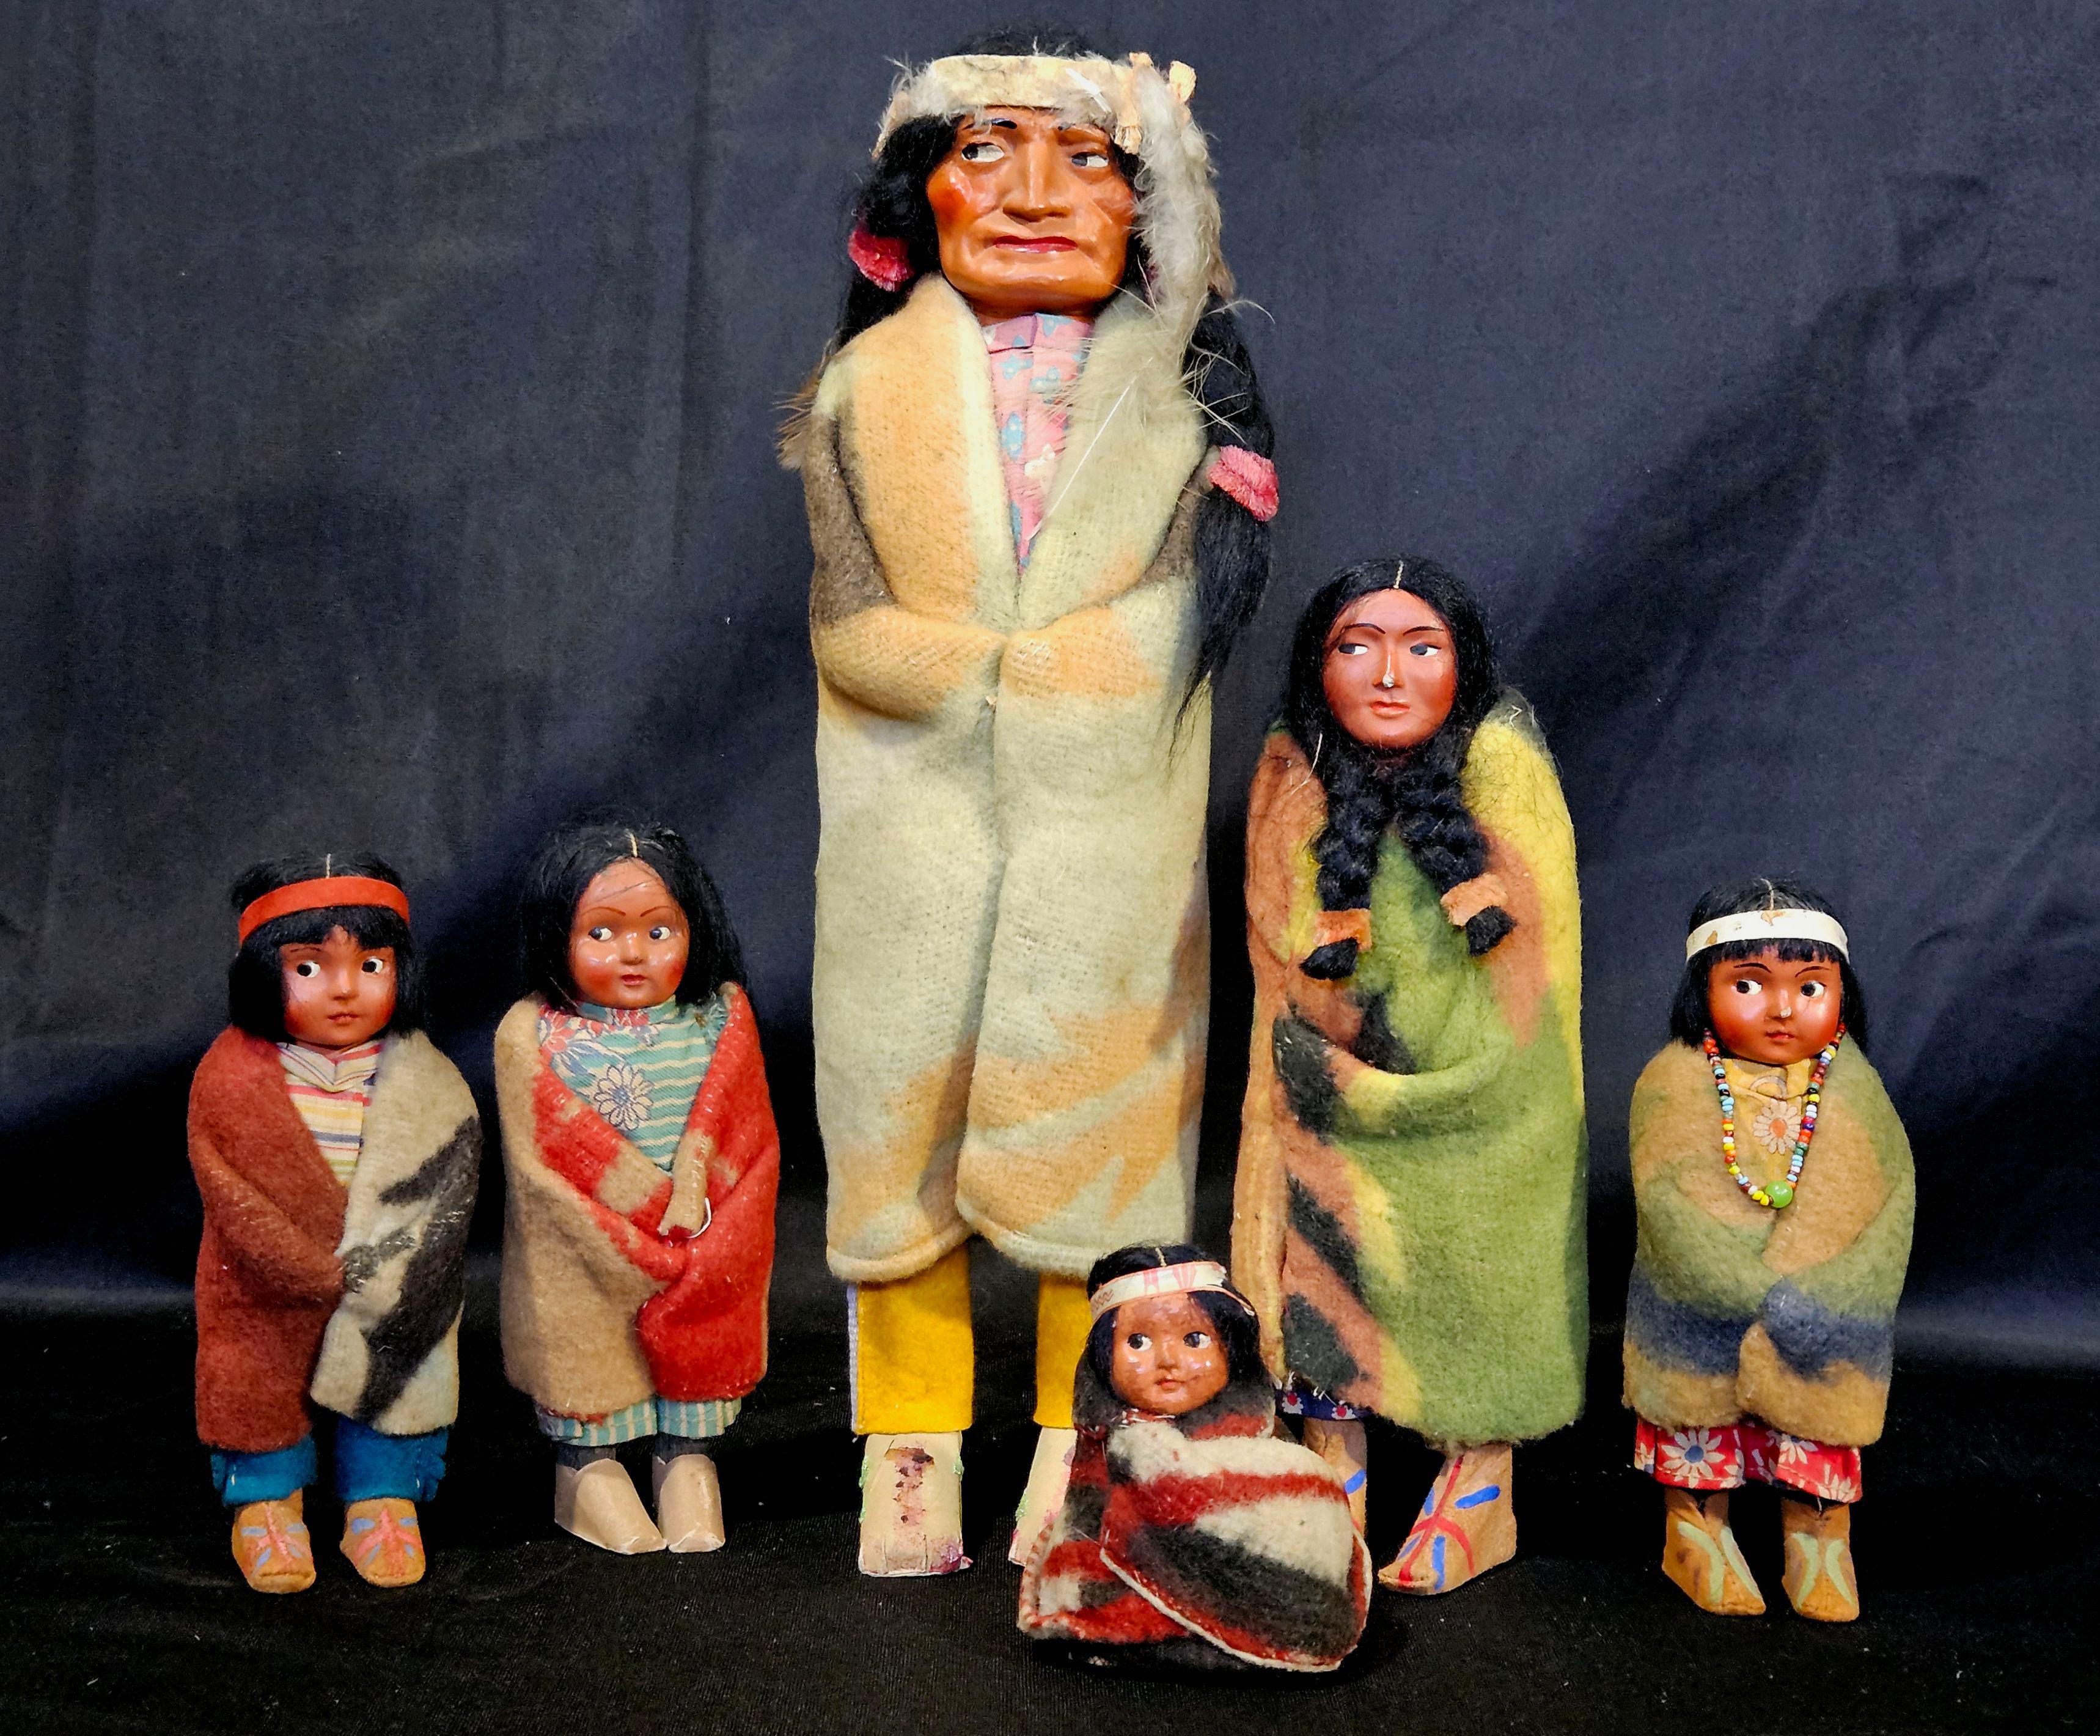 Eine Skookum-Puppe war eine Indianerpuppe, die Anfang des 20. Jahrhunderts als Souvenirartikel verkauft wurde.
Es gibt sie alle in verschiedenen Größen. Das letzte Foto zeigt die Abmessungen (Zoll) jeder Puppe, B (Breite) x H (Höhe) x D (Tiefe).
Die